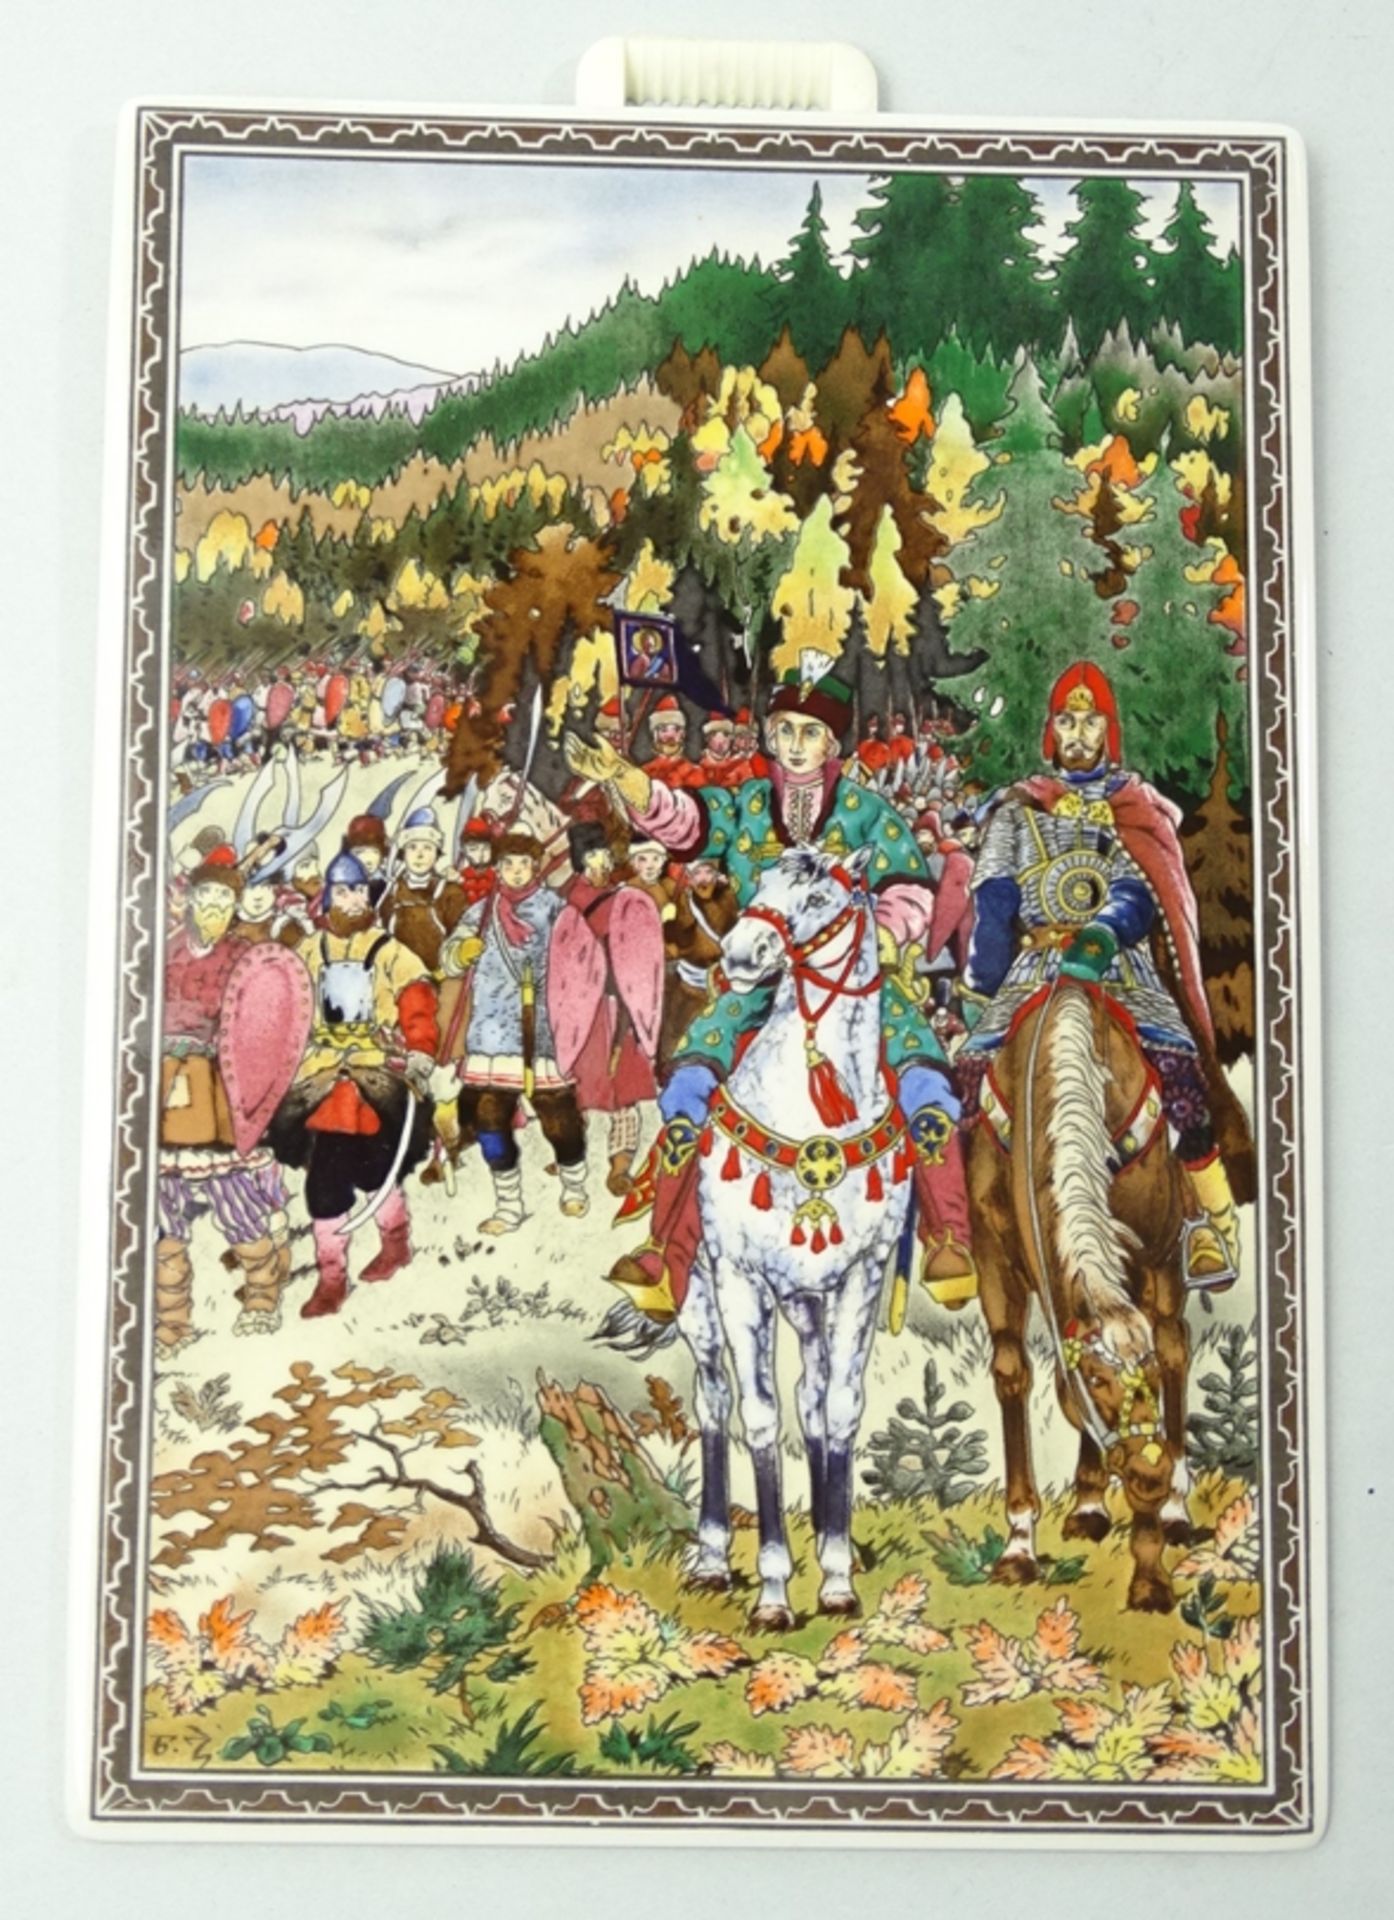 4 Porzellanbilder von Villeroy & Boch, Motive von Boris Zvorykin, je 17,5 x 12,5 cm - Image 8 of 10